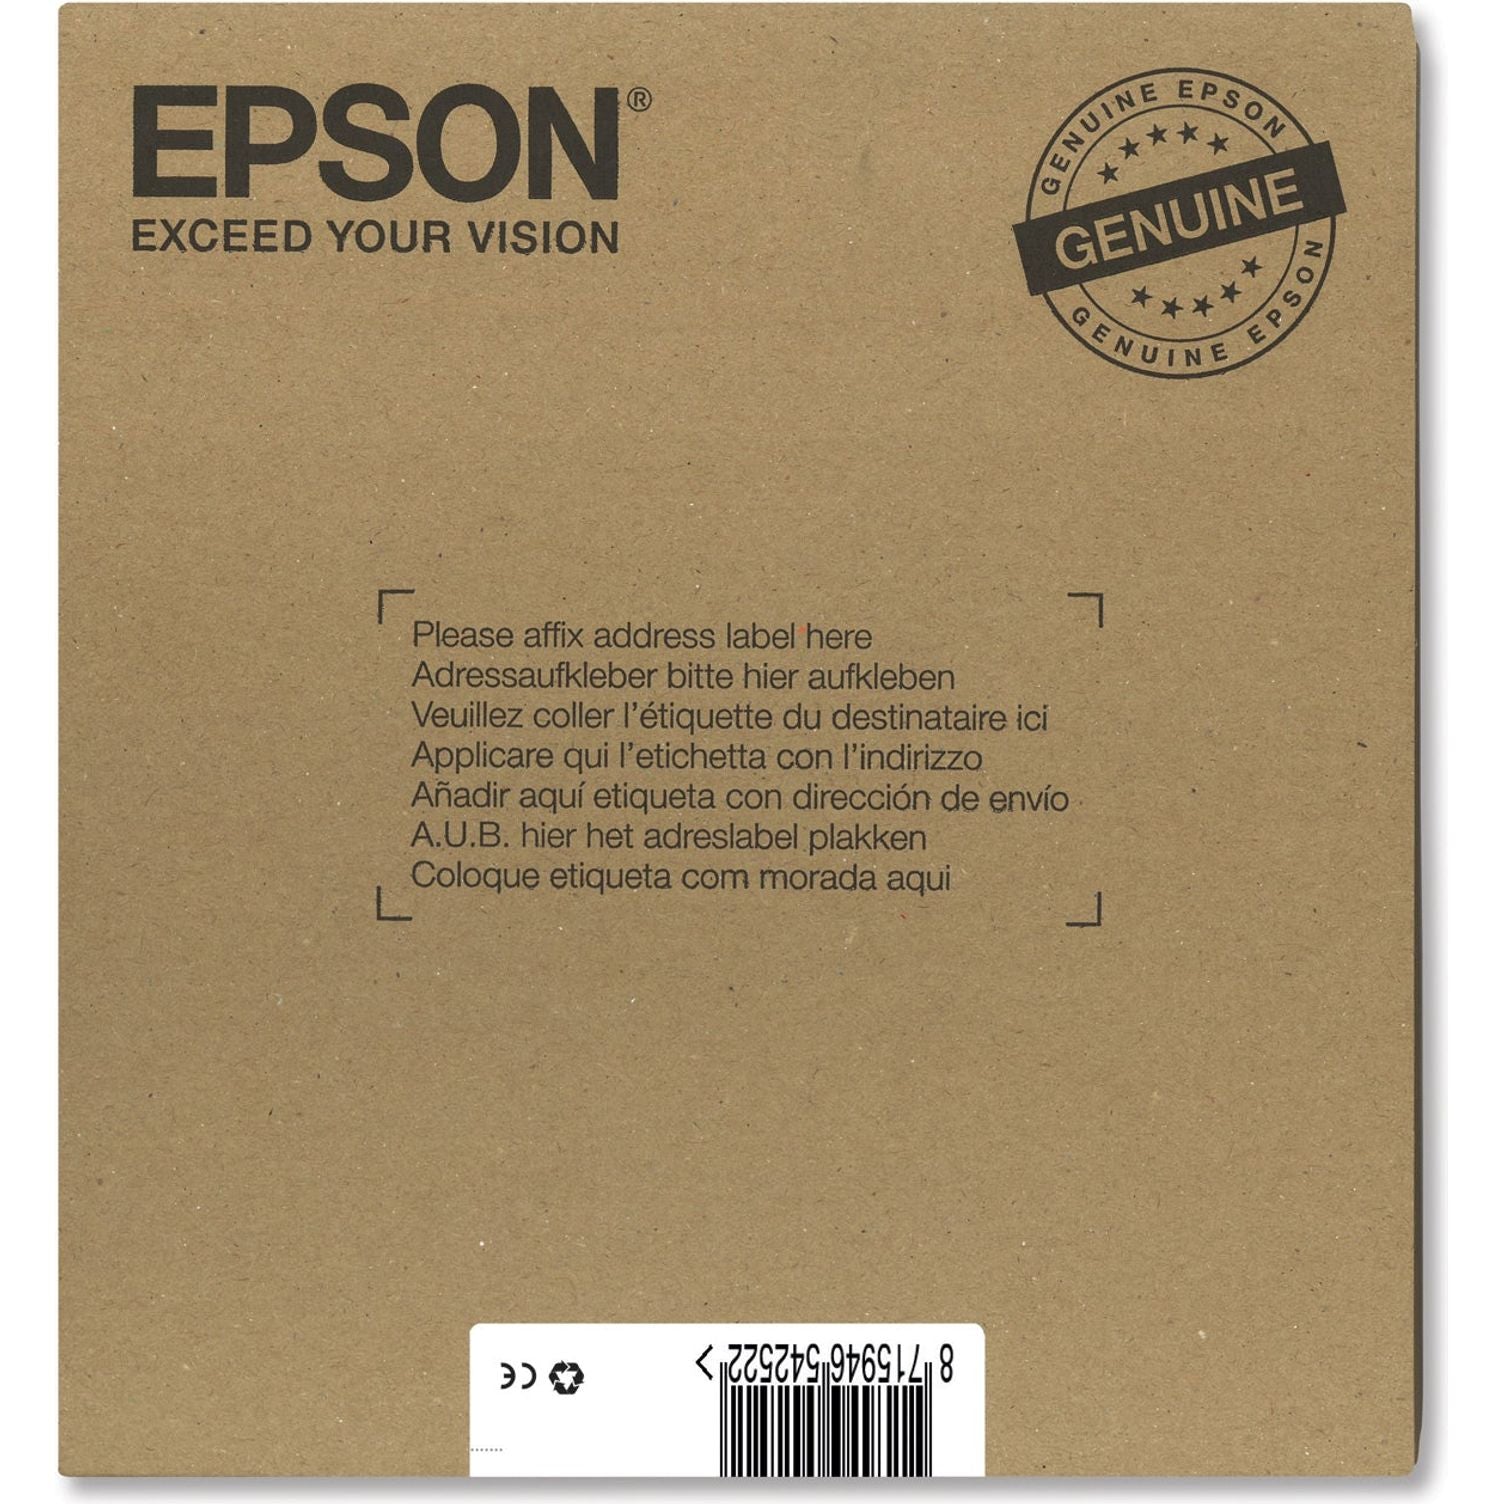 EPSON T0715 blekhylki svart blátt rautt gult C13T07154510 Epson Stylus SX 415